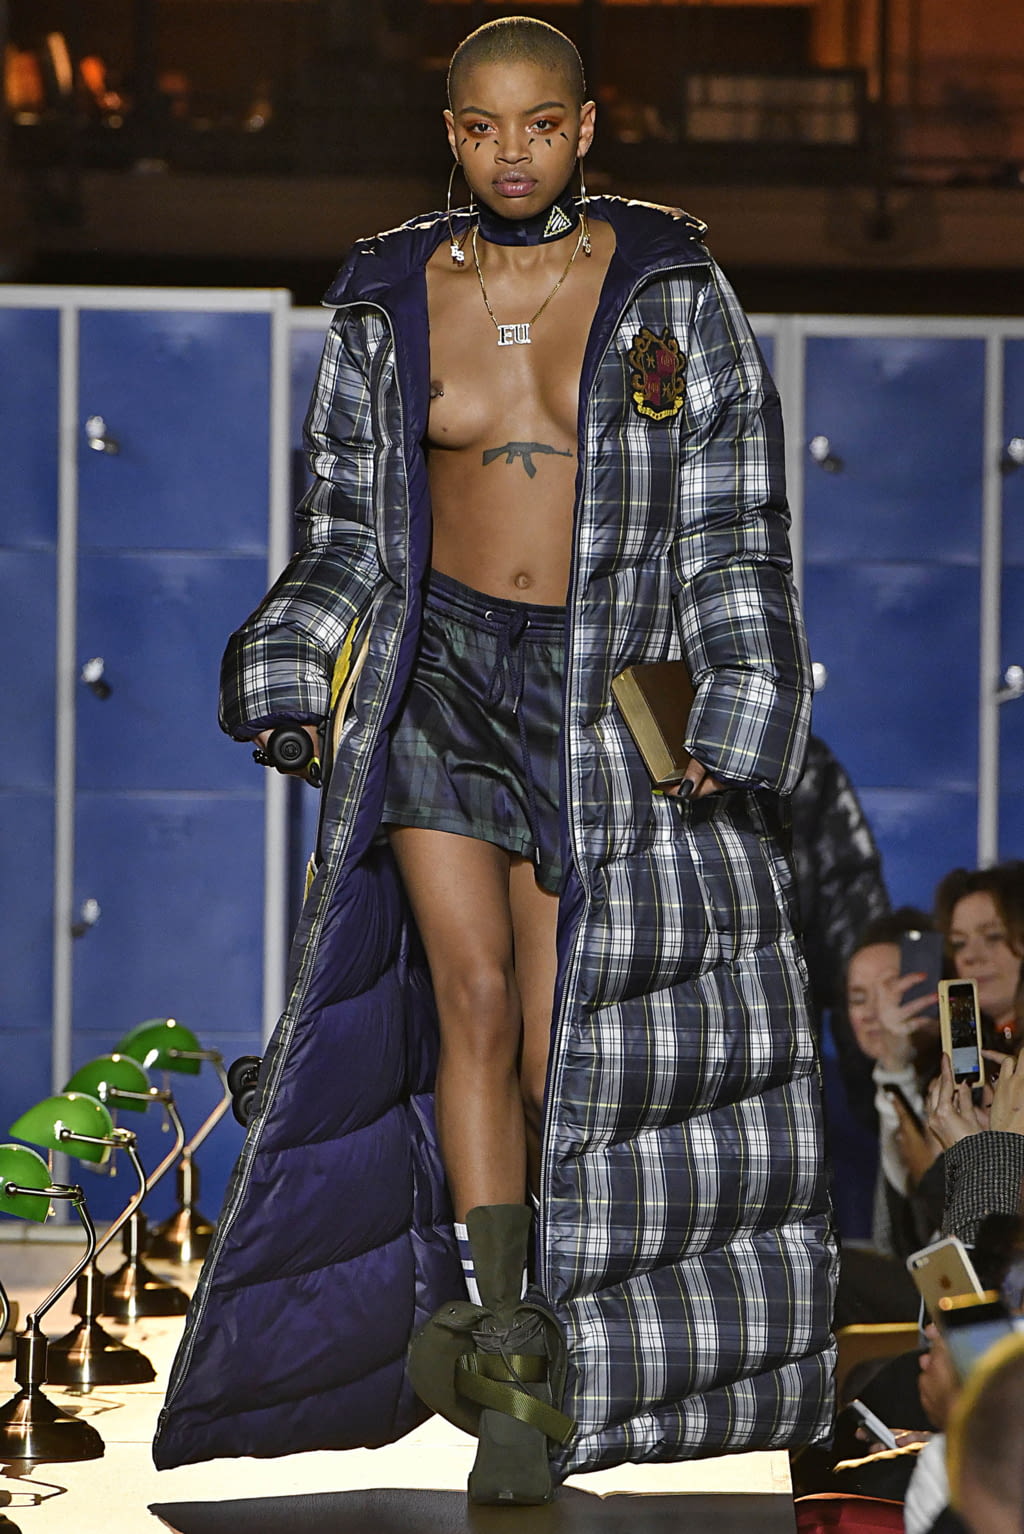 Punto de referencia en cualquier momento Decorativo Fenty x Puma by Rihanna F/W 17 womenswear #1 - The Fashion Search Engine -  TAGWALK